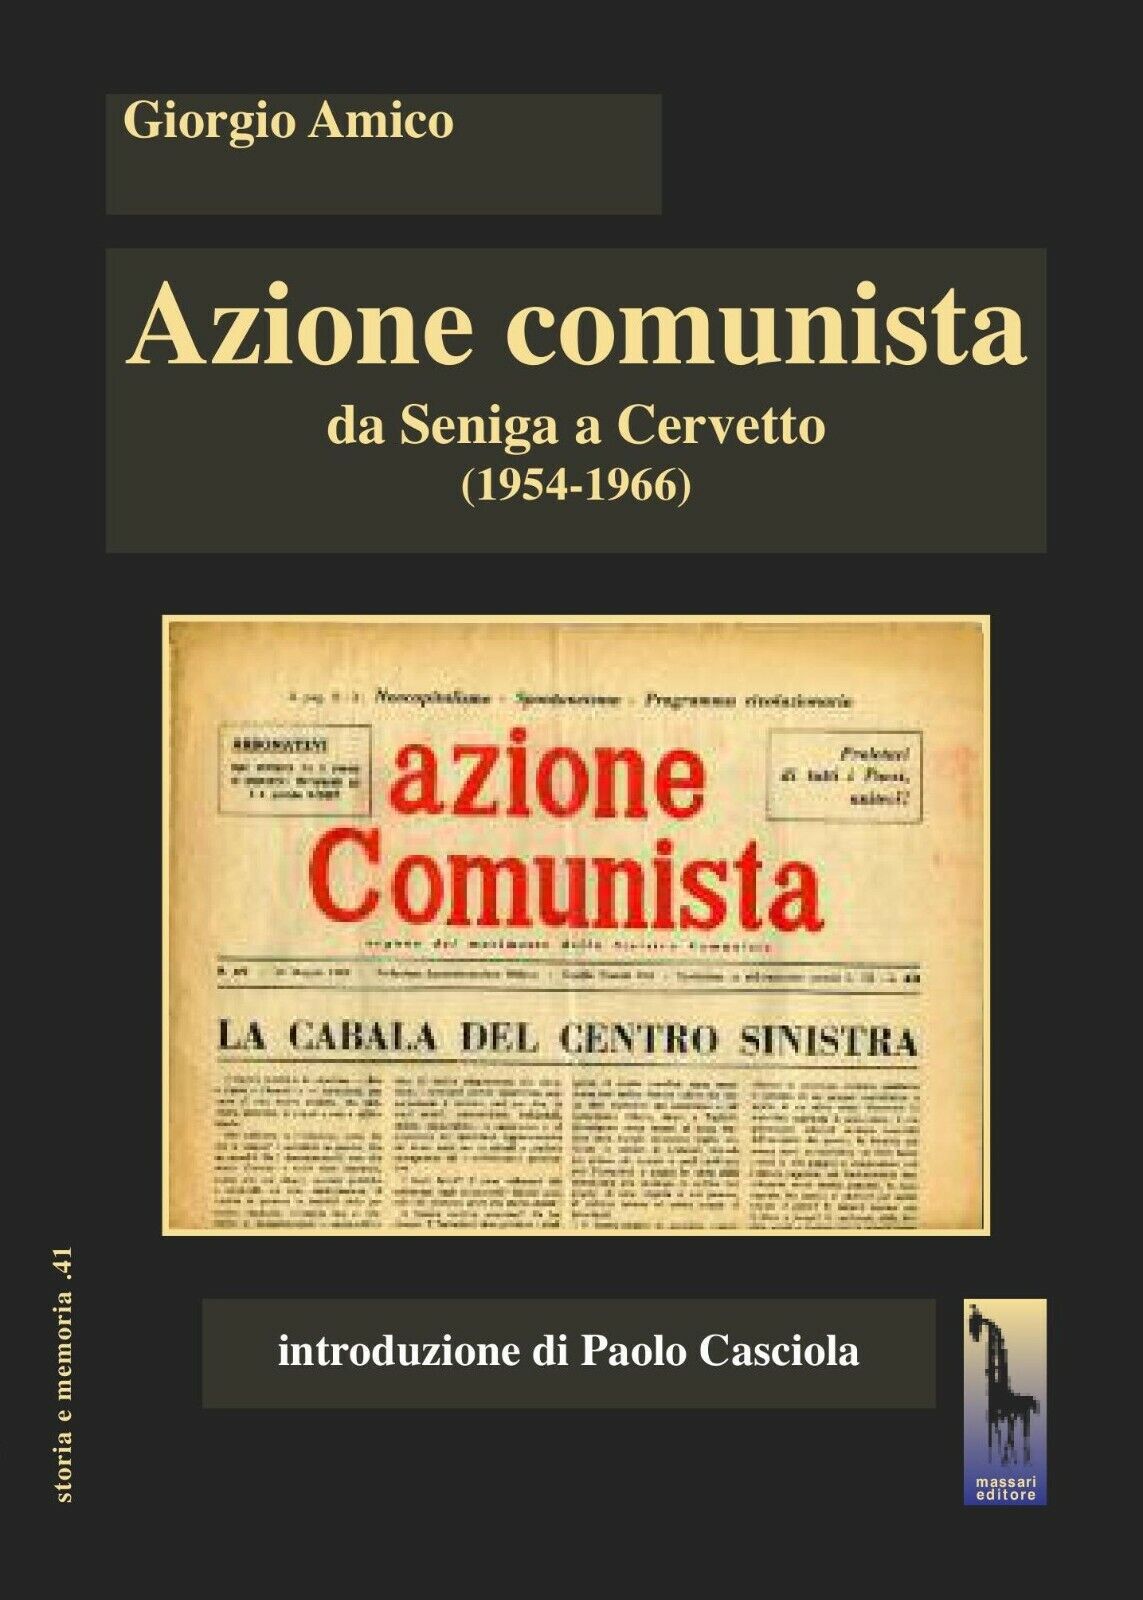 Azione comunista. Da Seniga a Cervetto (1954-1966) di Giorgio Amico,  2020,  Mas